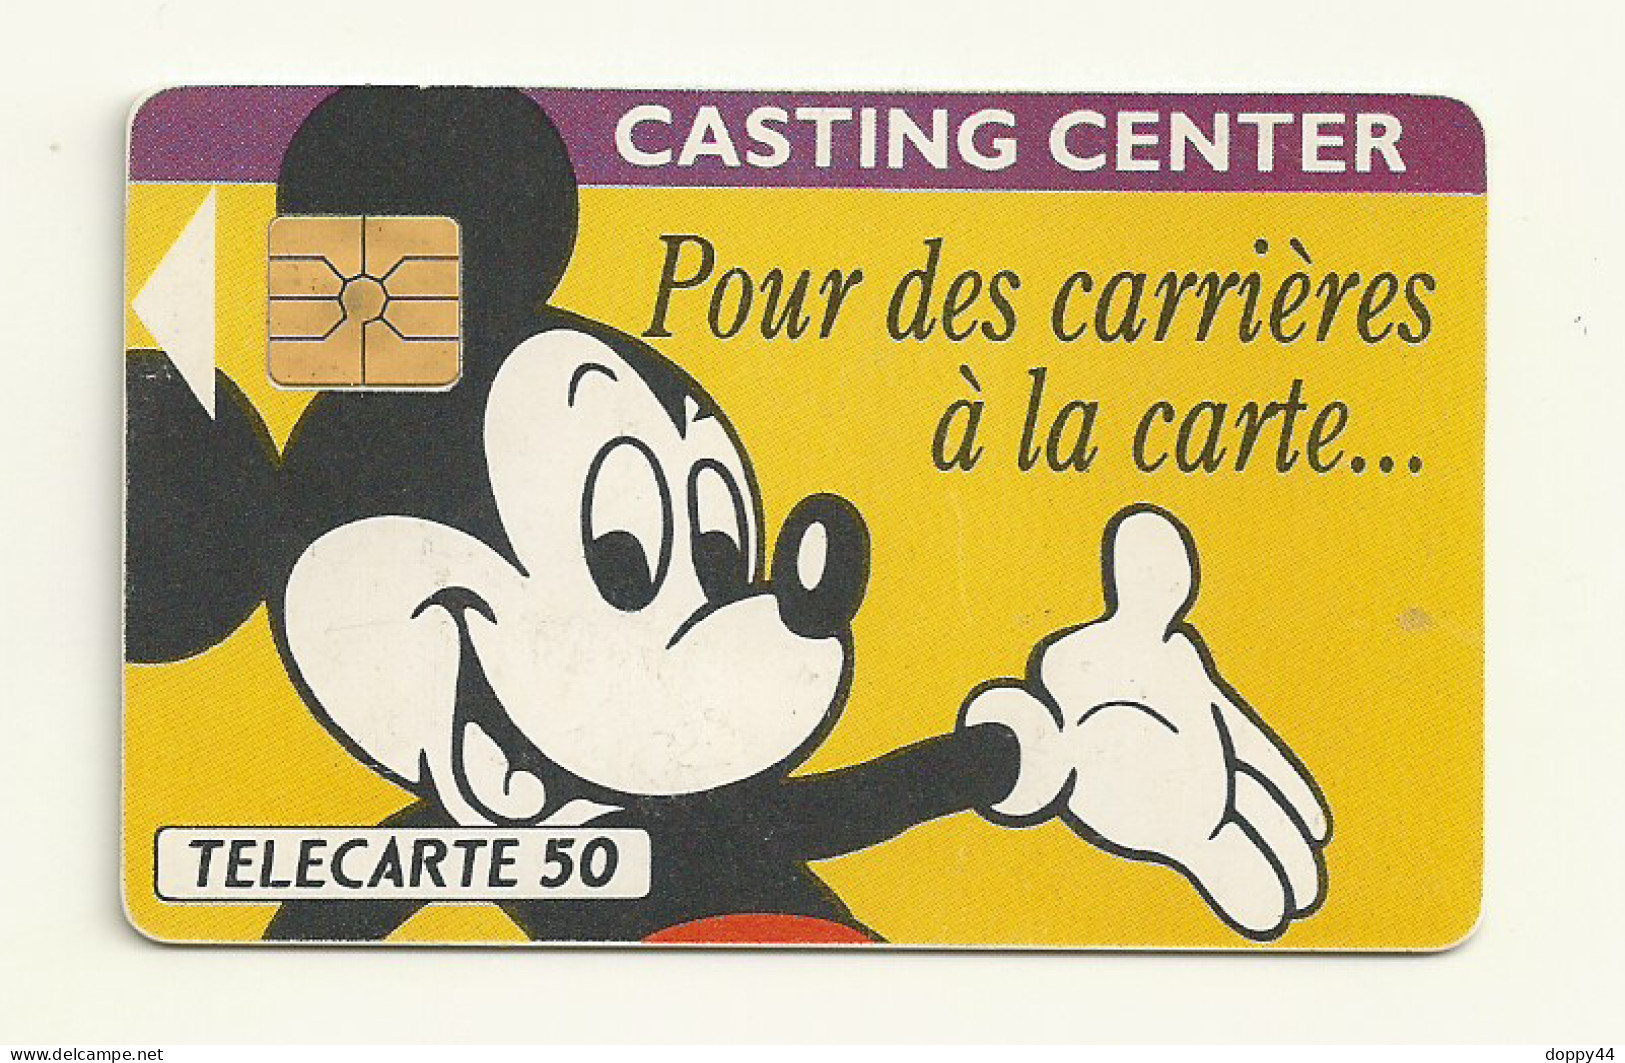 TELECARTE RECRUTEMENT EURODISNEY ANNEE 1991.TTB - Disney